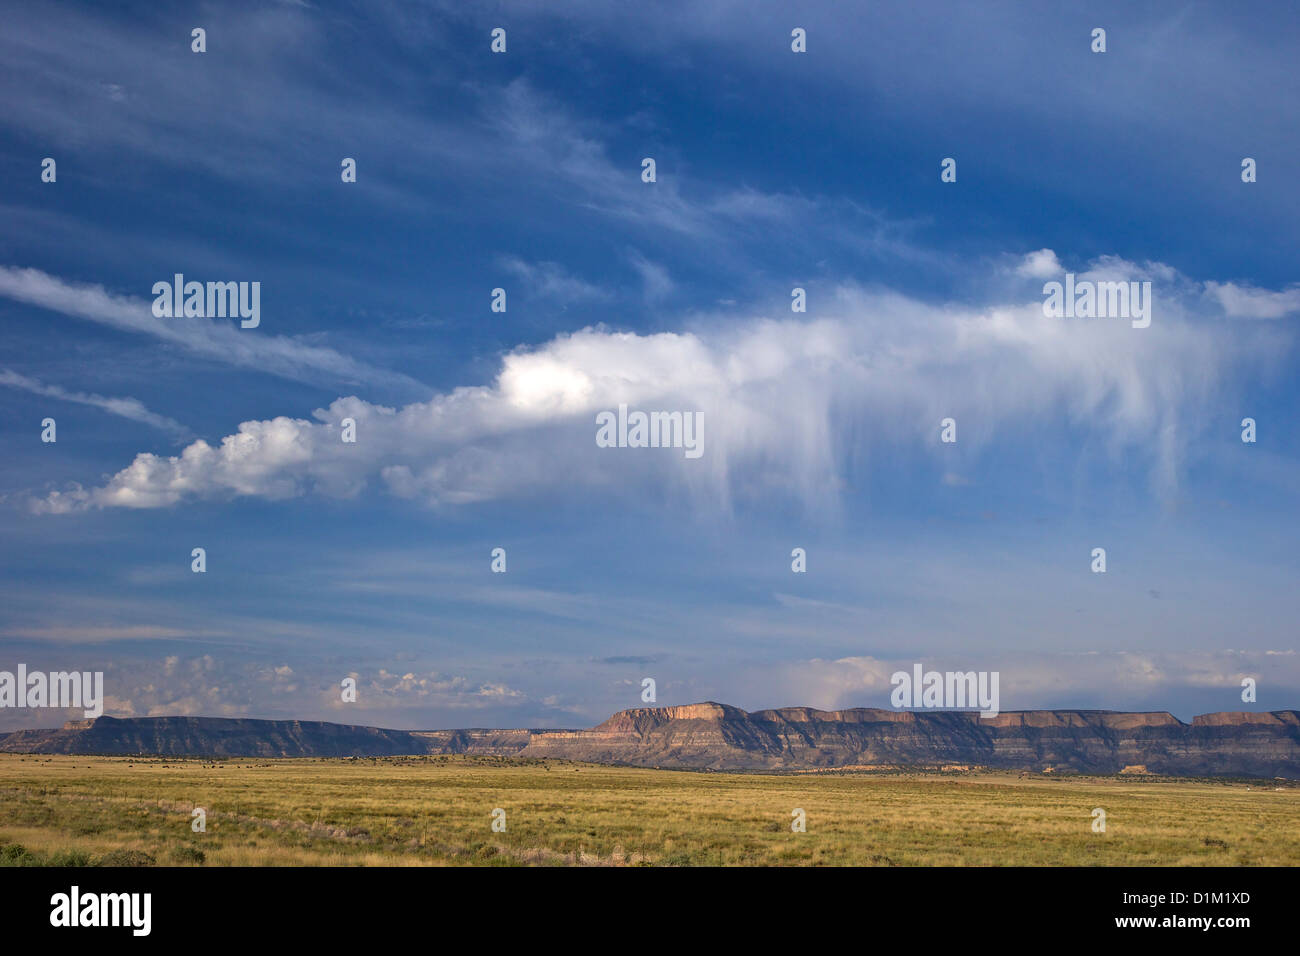 Alba nuvole sopra Arizona, sud della Monument Valley, Stati Uniti d'America Foto Stock